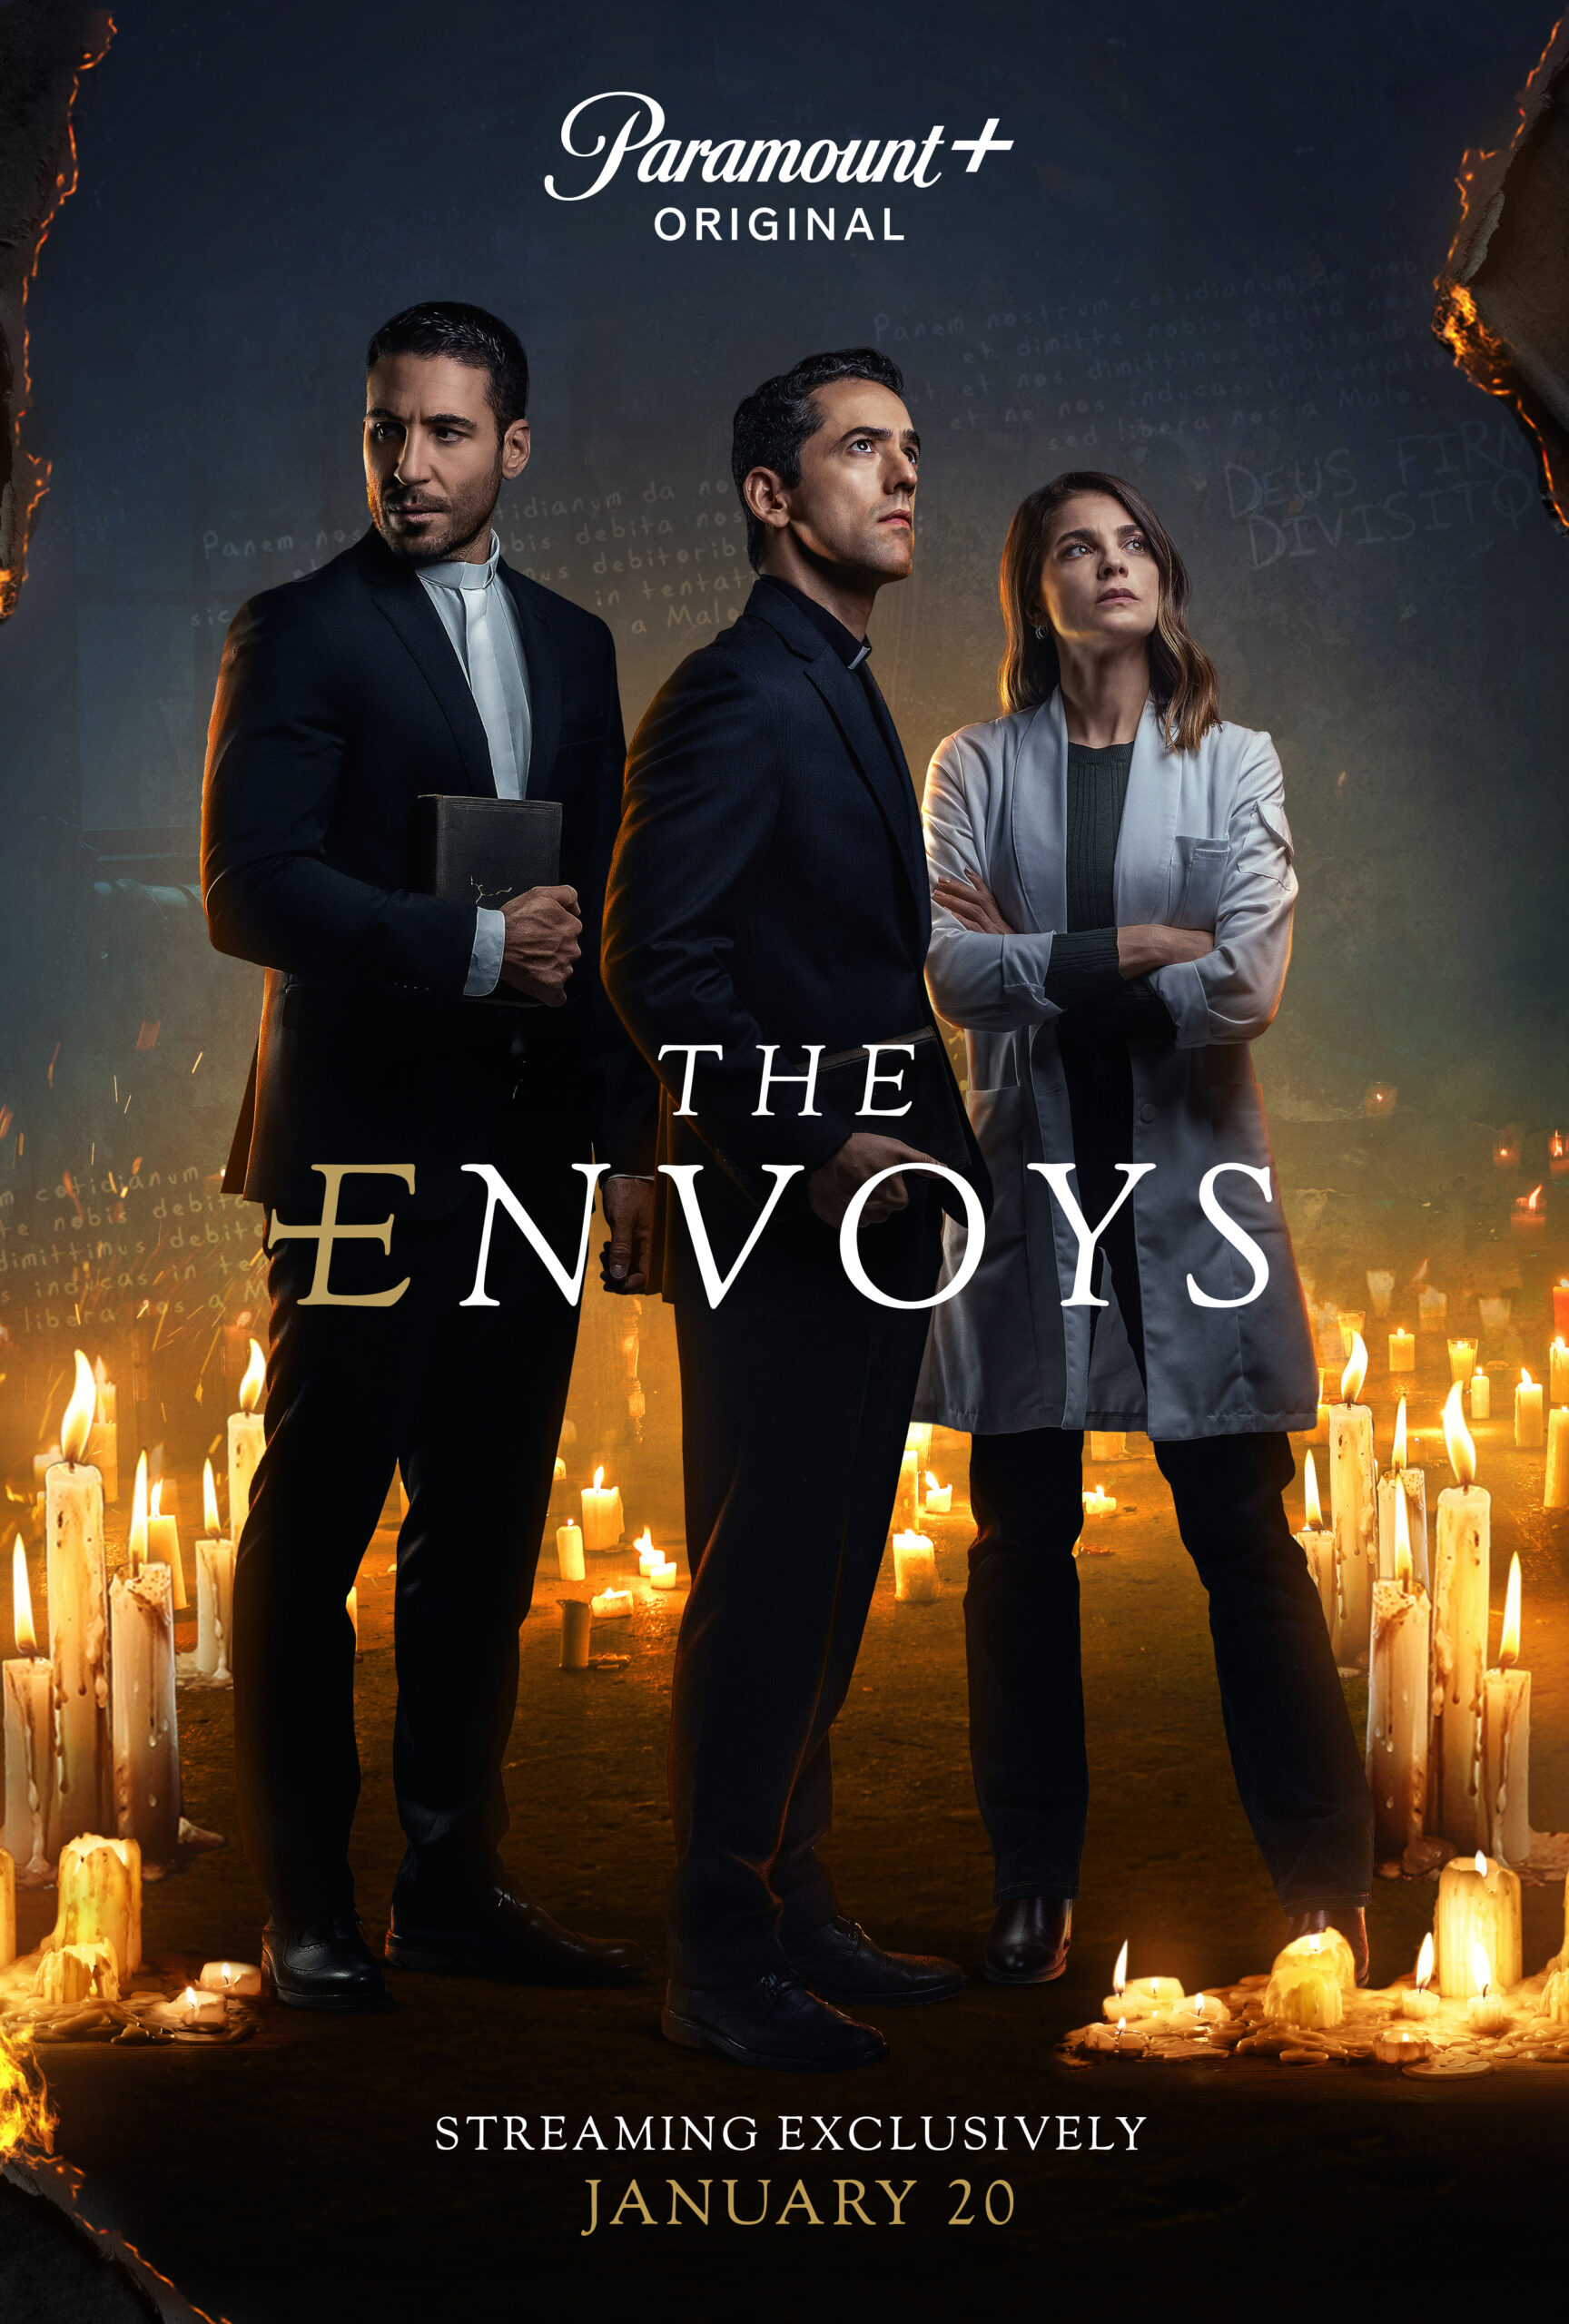 Is “The Envoys Season 1” on Paramount+